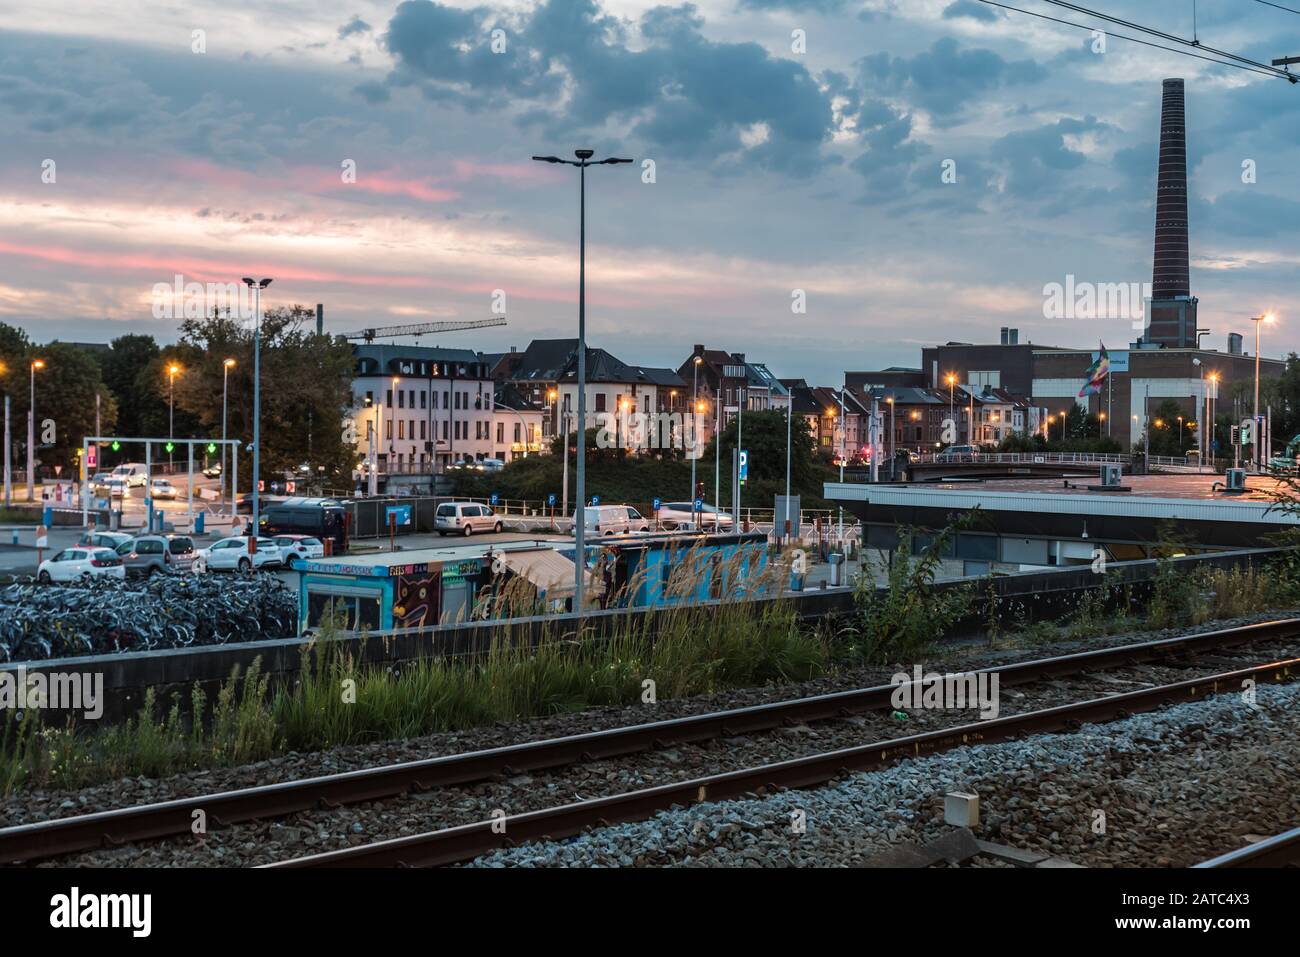 Gent Dampoort, Flanders/Belgien - 09. 02 2019: Abendlicher Panoramablick über den Industriestandort und den Bahnhof von Gent Dampoort Stockfoto